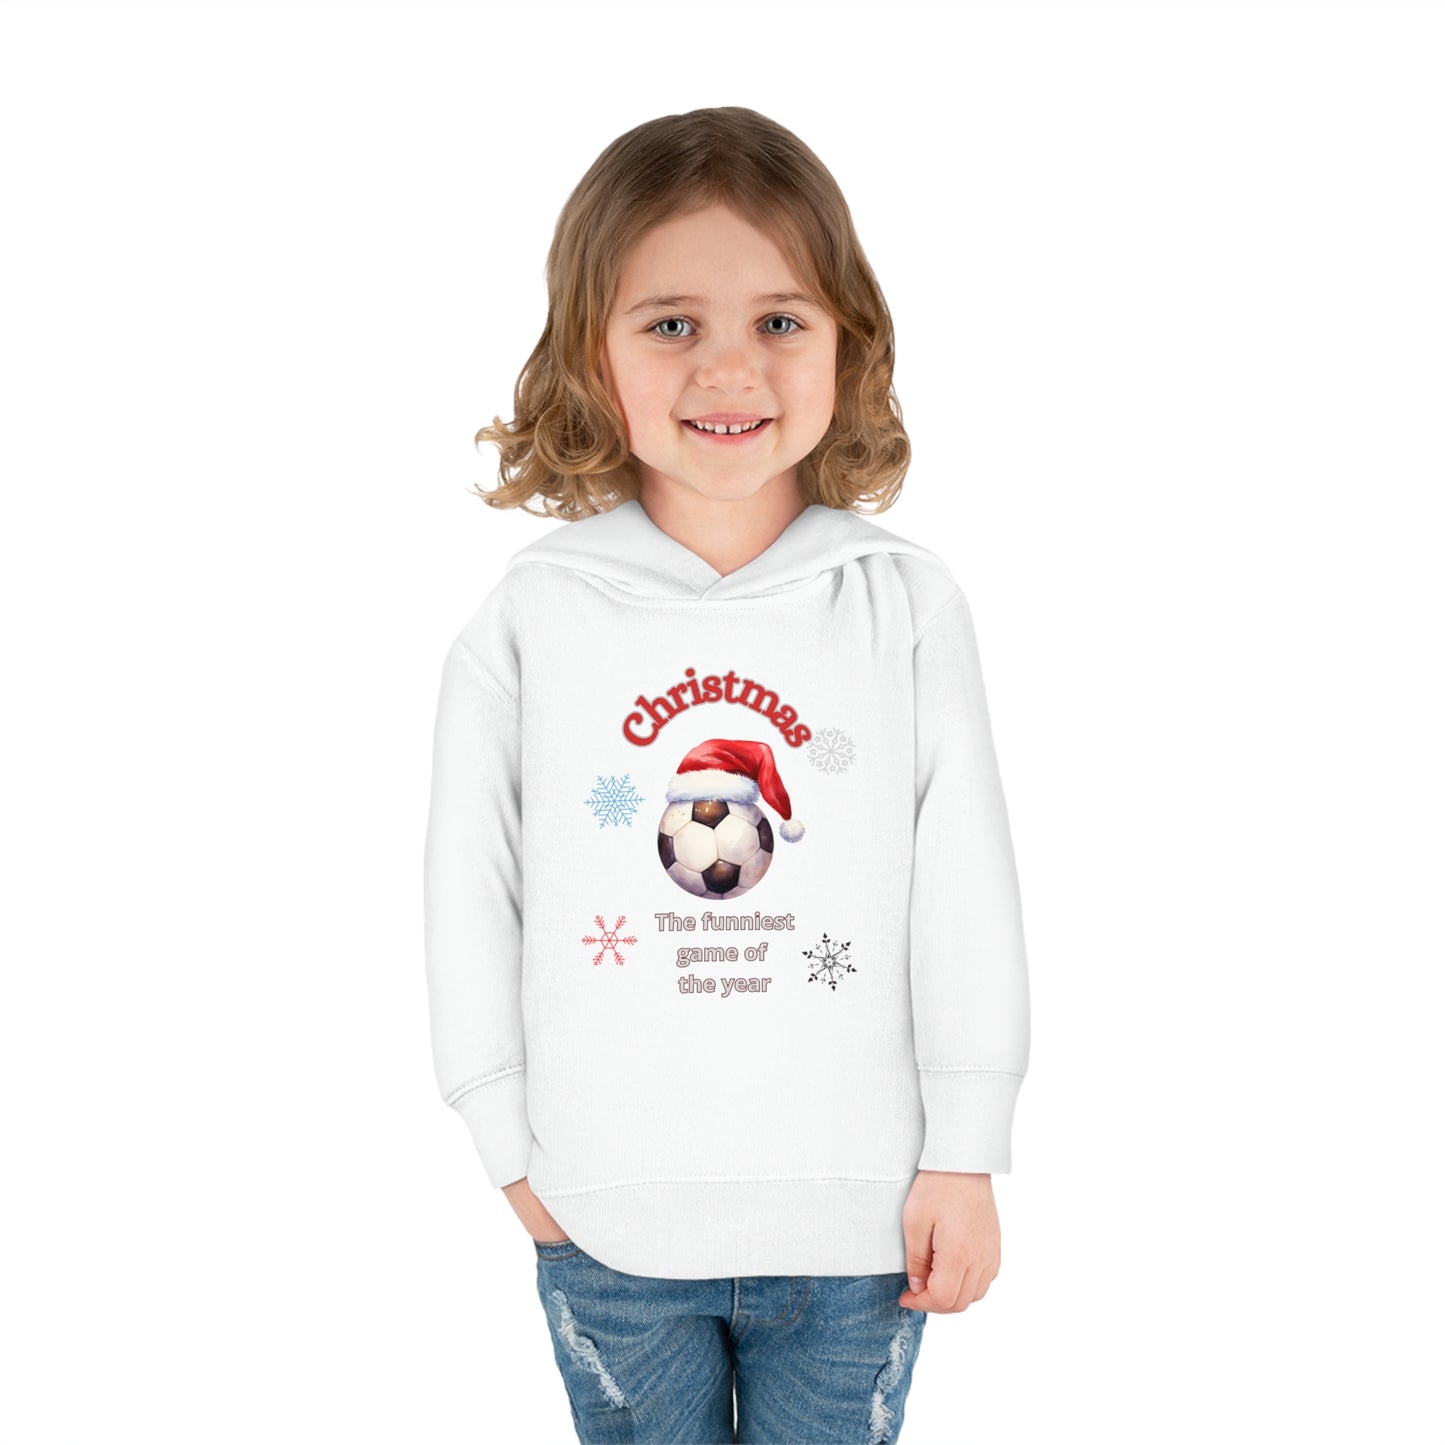 Fun Winter Fleece Sweatshirt for Kids,Christmas gift,sweatshirt for kids,Children's Hoodie,Cute Winter Sweatshirt for the Little Ones